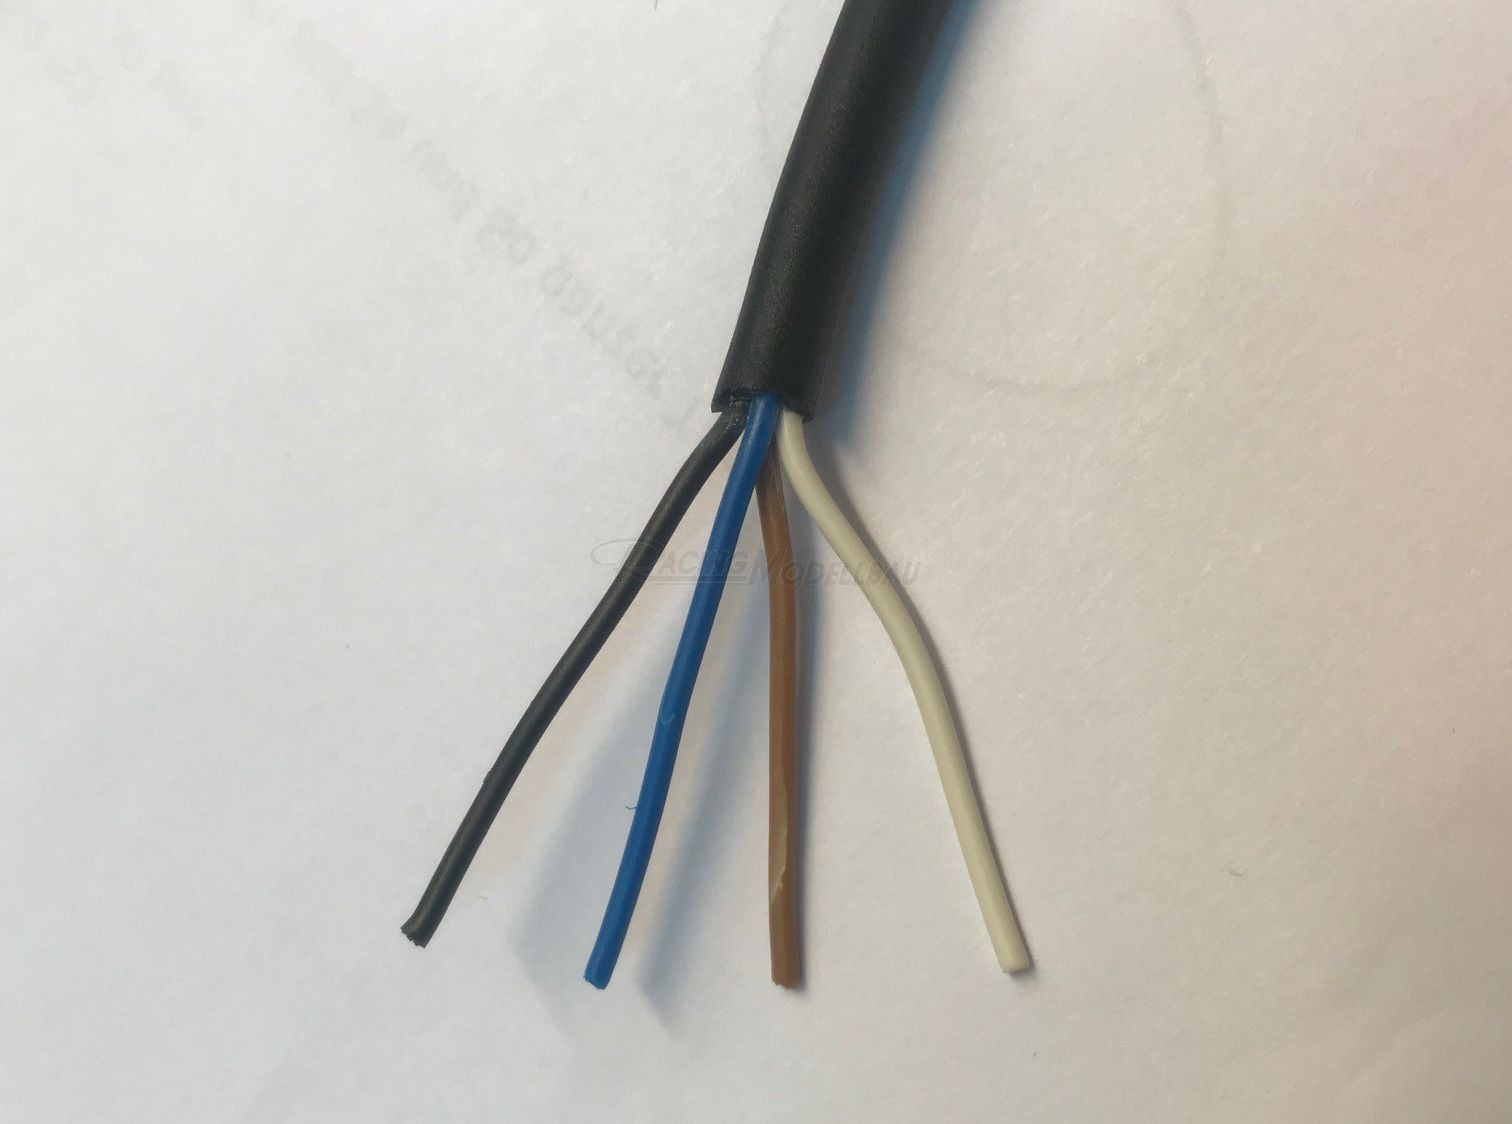 4pol-Kabel für Steckverbinder 1m